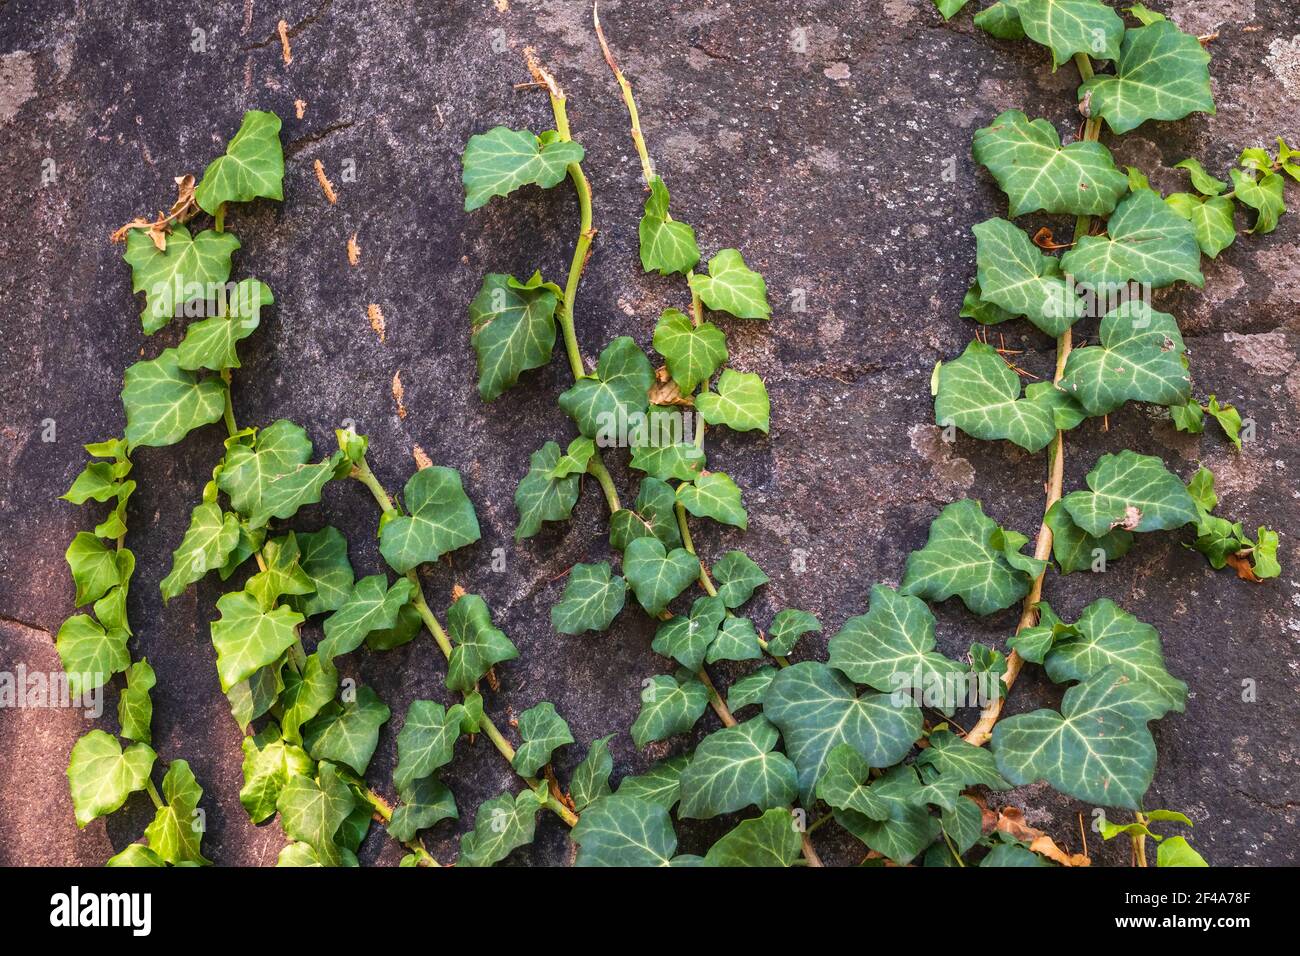 green creeper pflanze wächst auf einer felswand. alte steinmauer